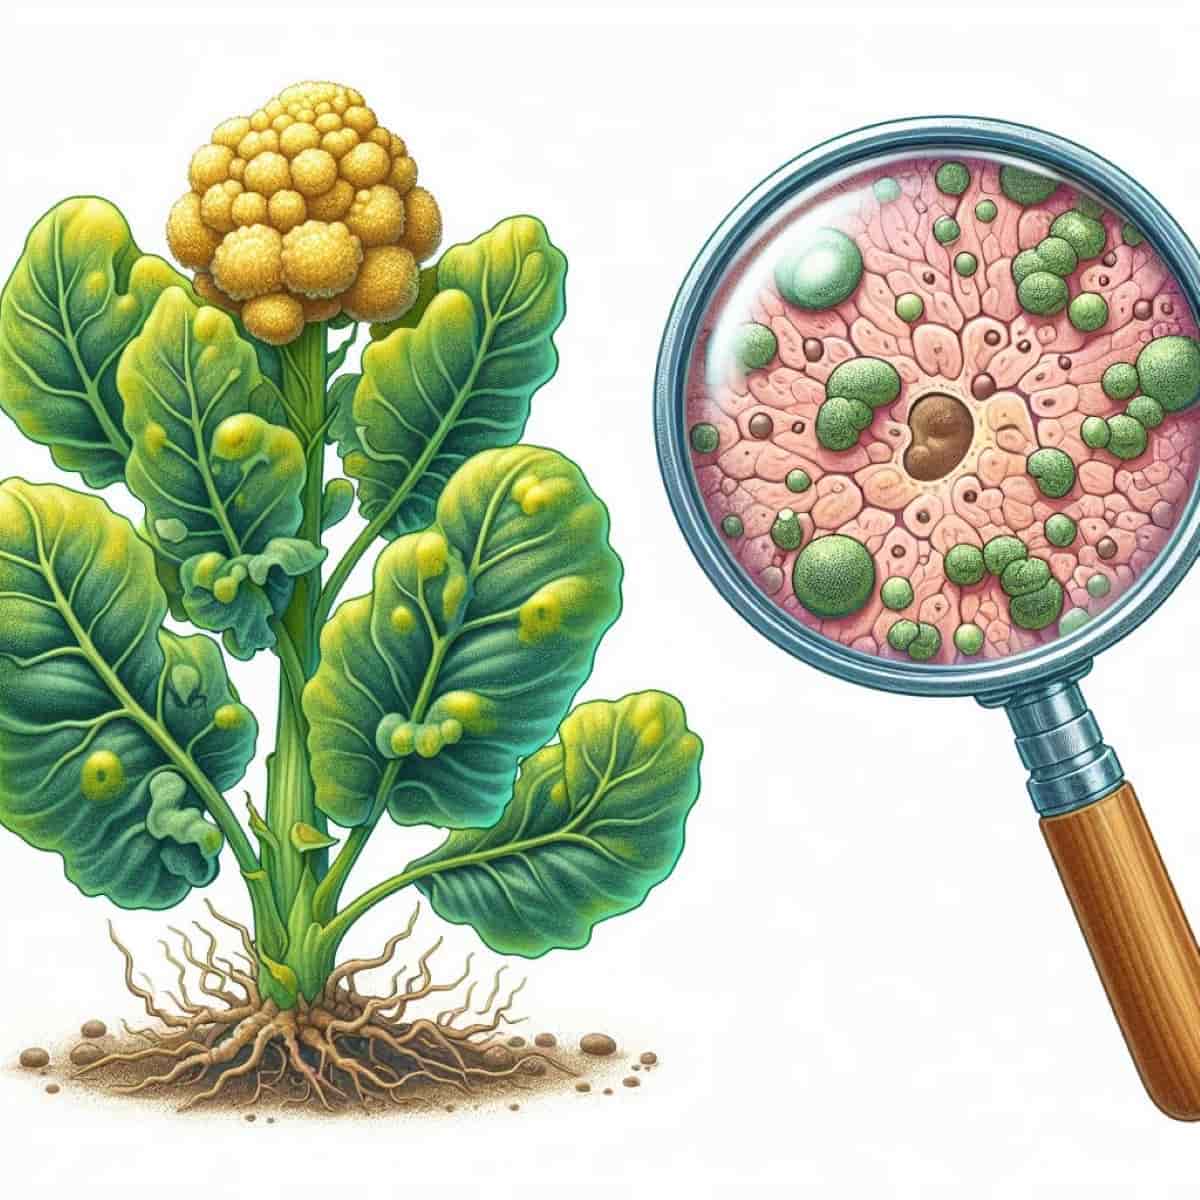 Club Root Disease in Plants